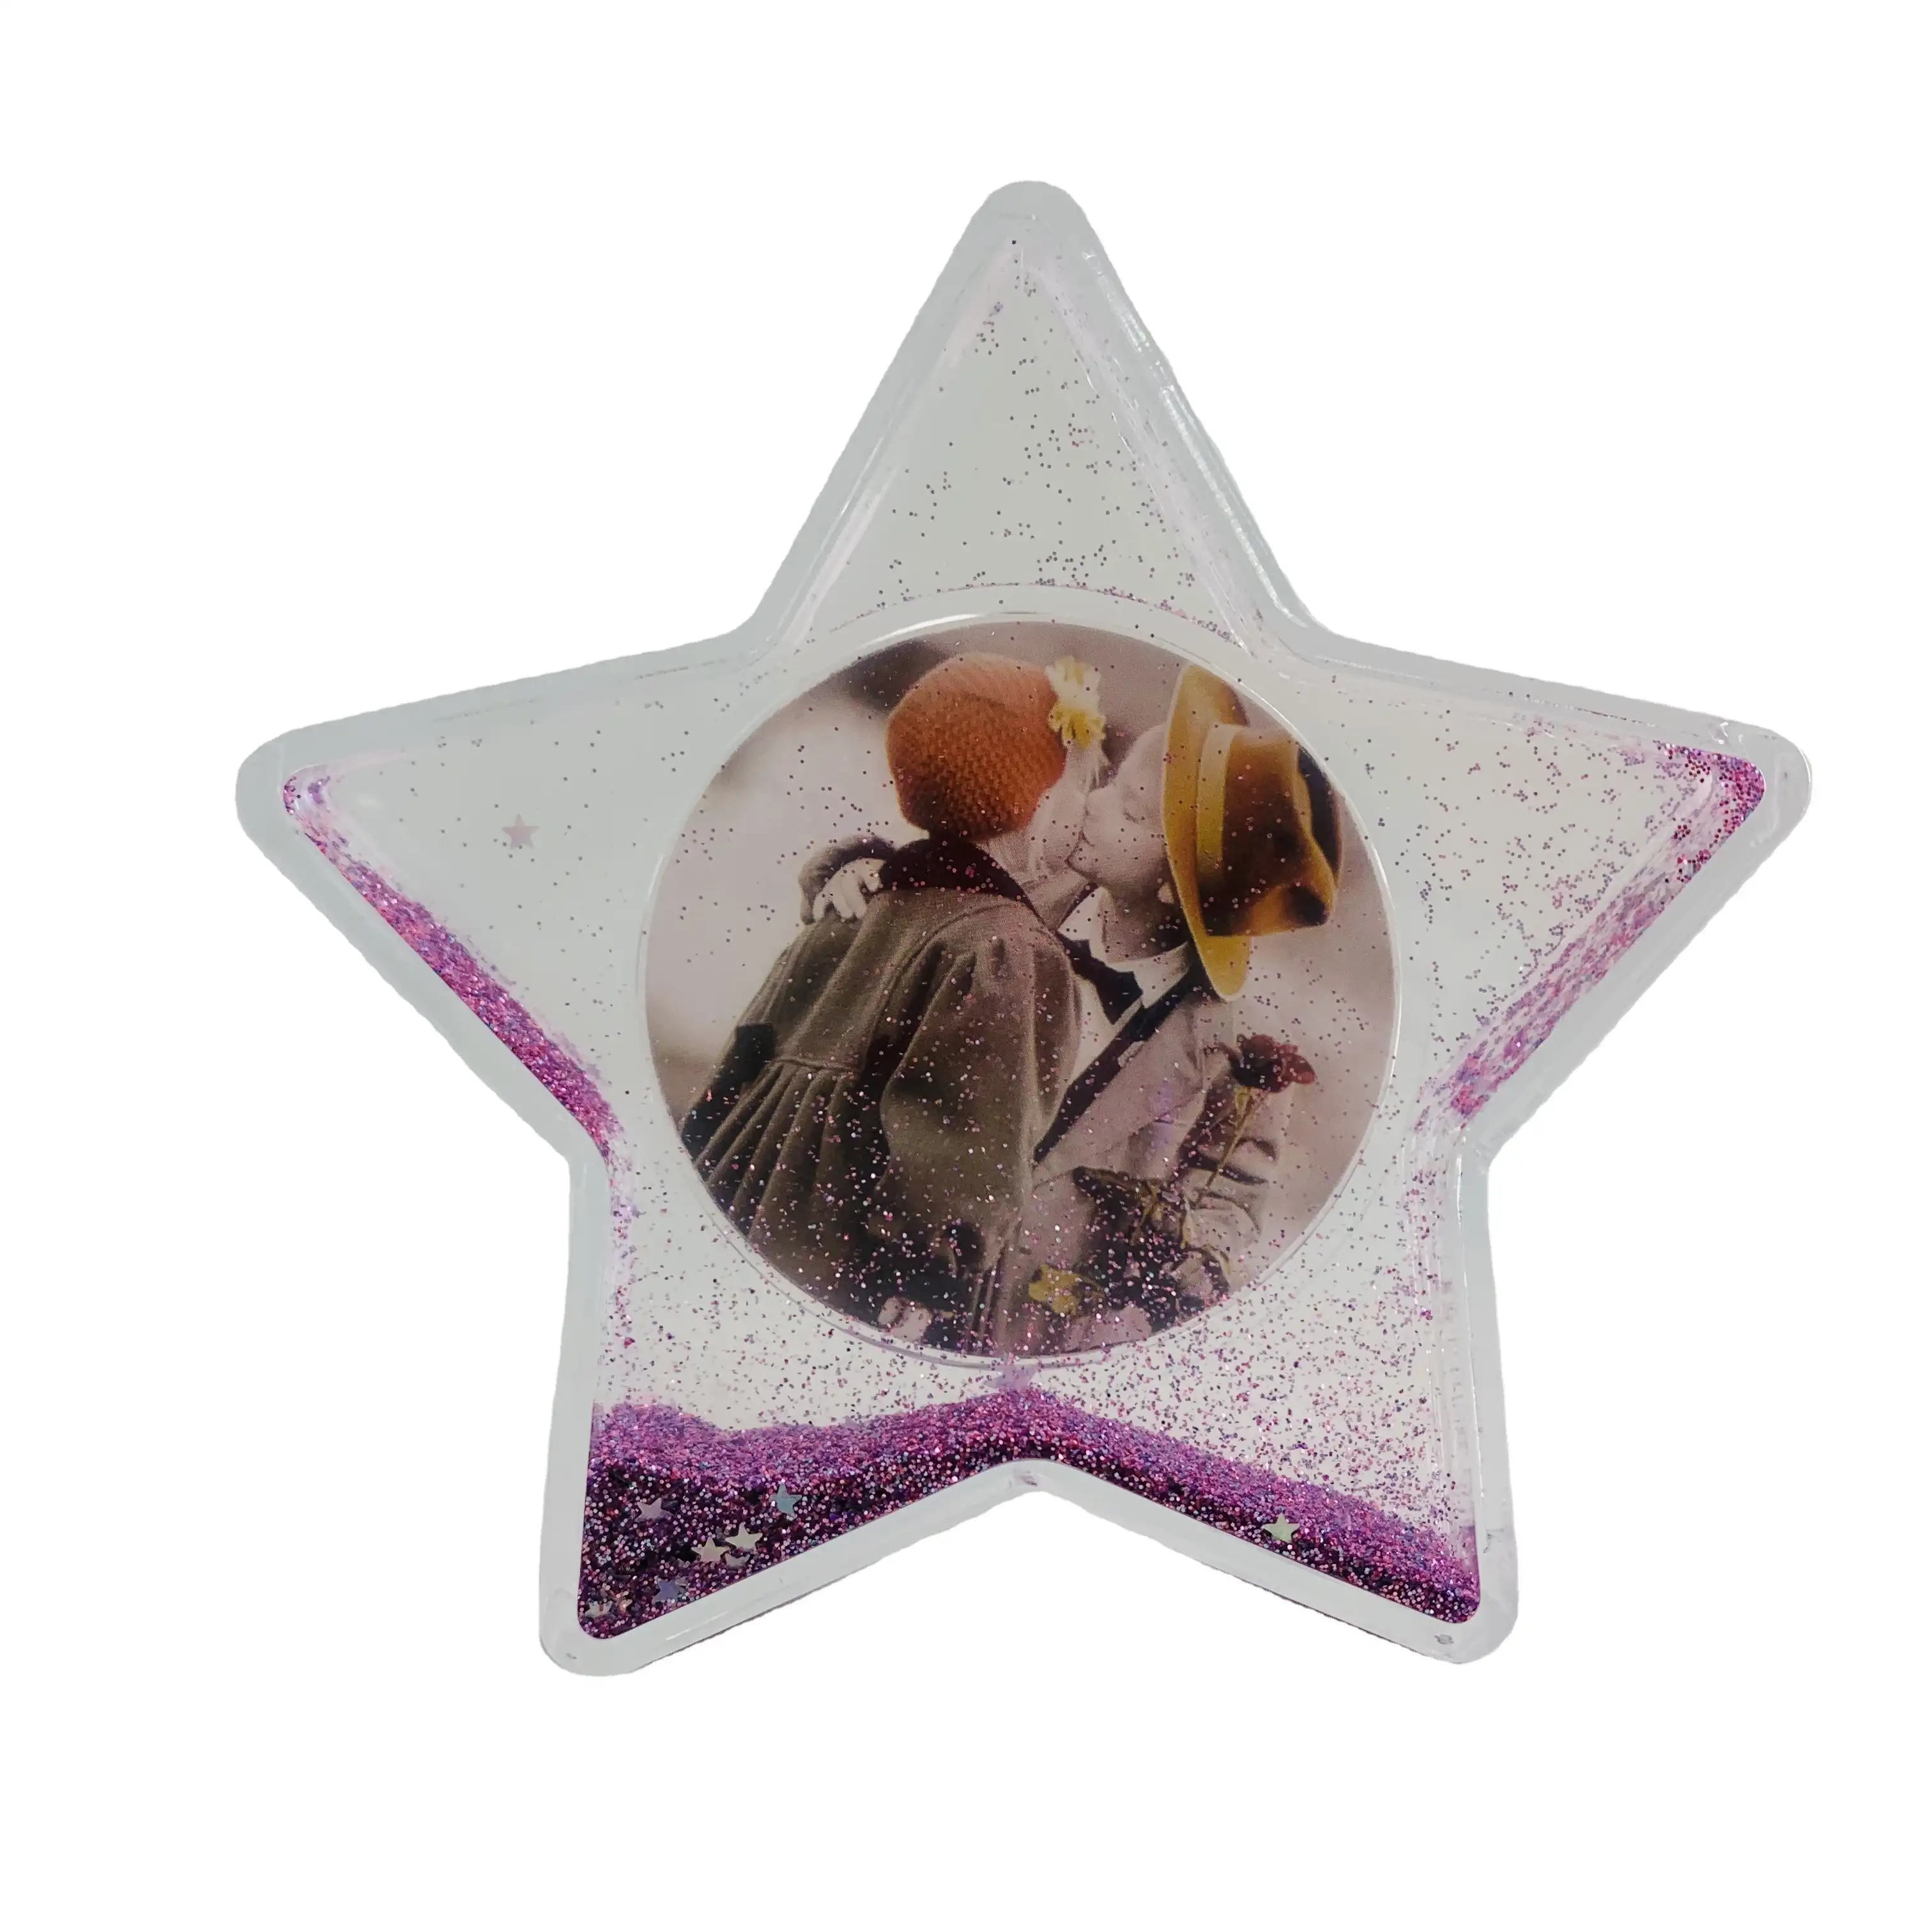 Moldura de plástico para presente de aniversário infantil, moldura de plástico com forma de estrela para crianças, 2020